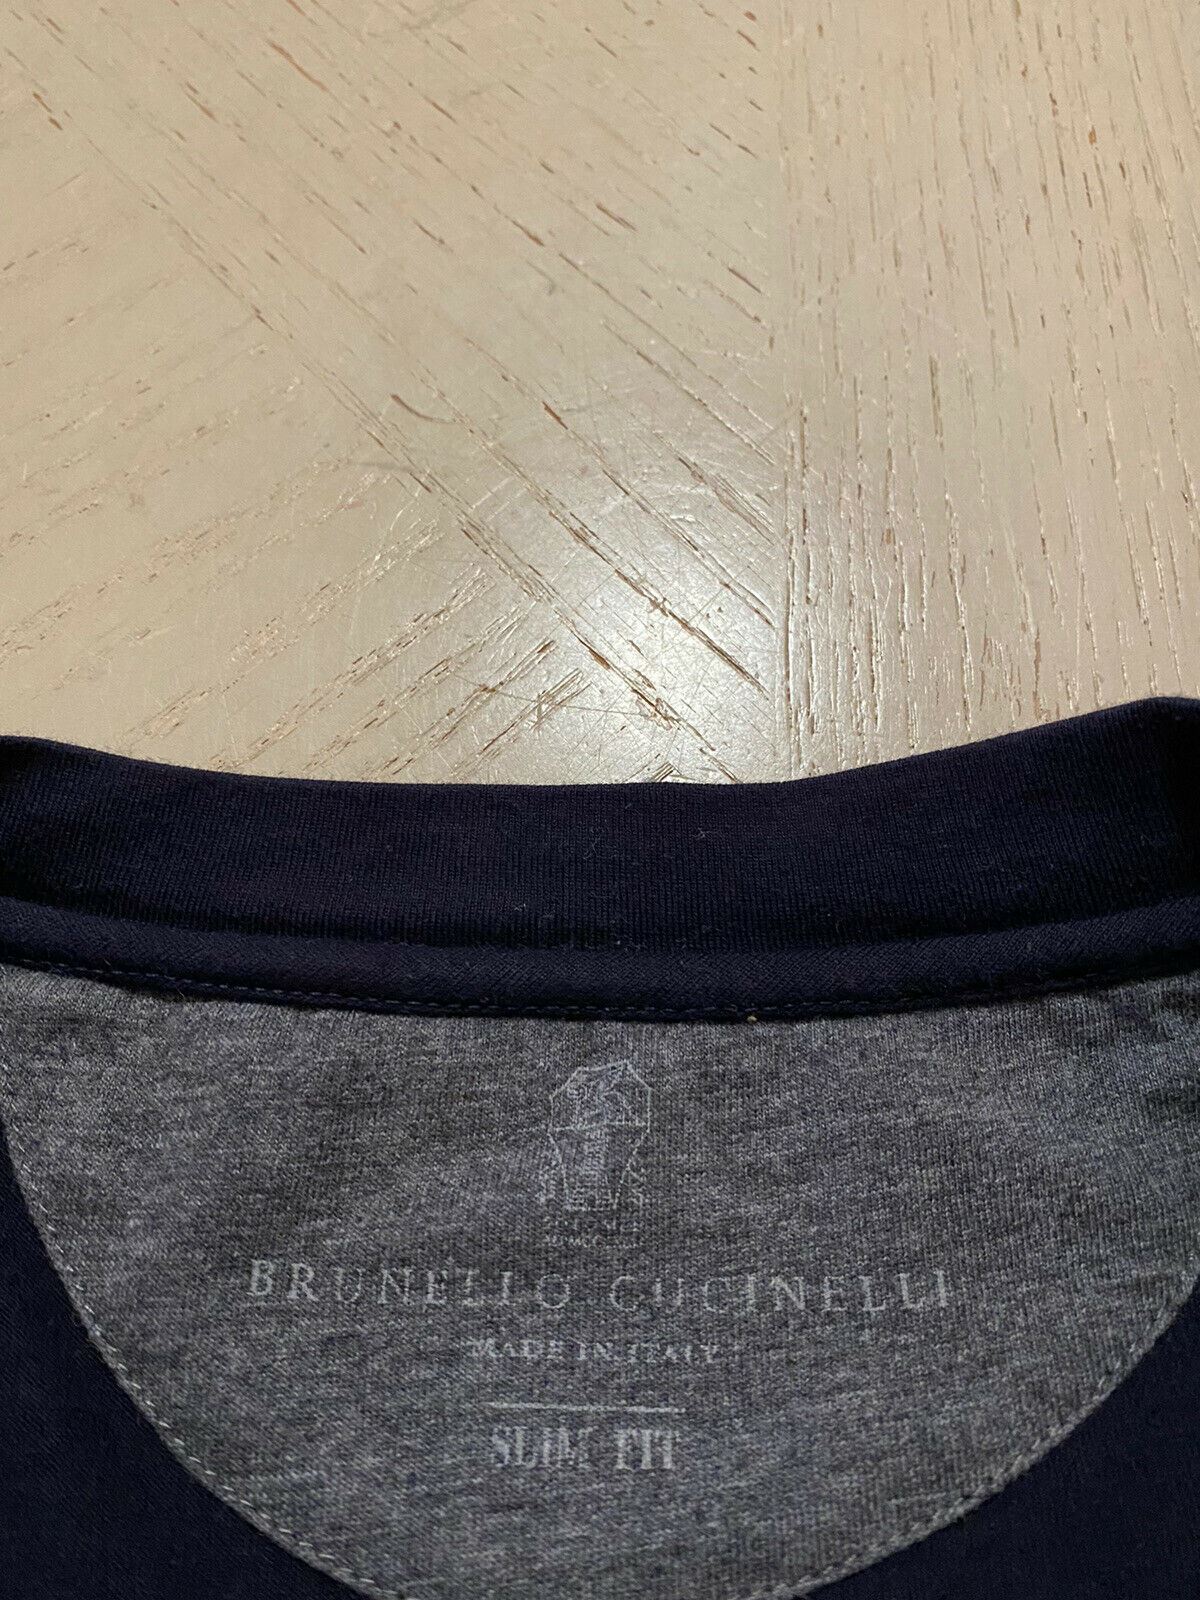 495 $ Brunello Cucinelli Herren-T-Shirt Slim Fit Marine/Grau Größe M Italien